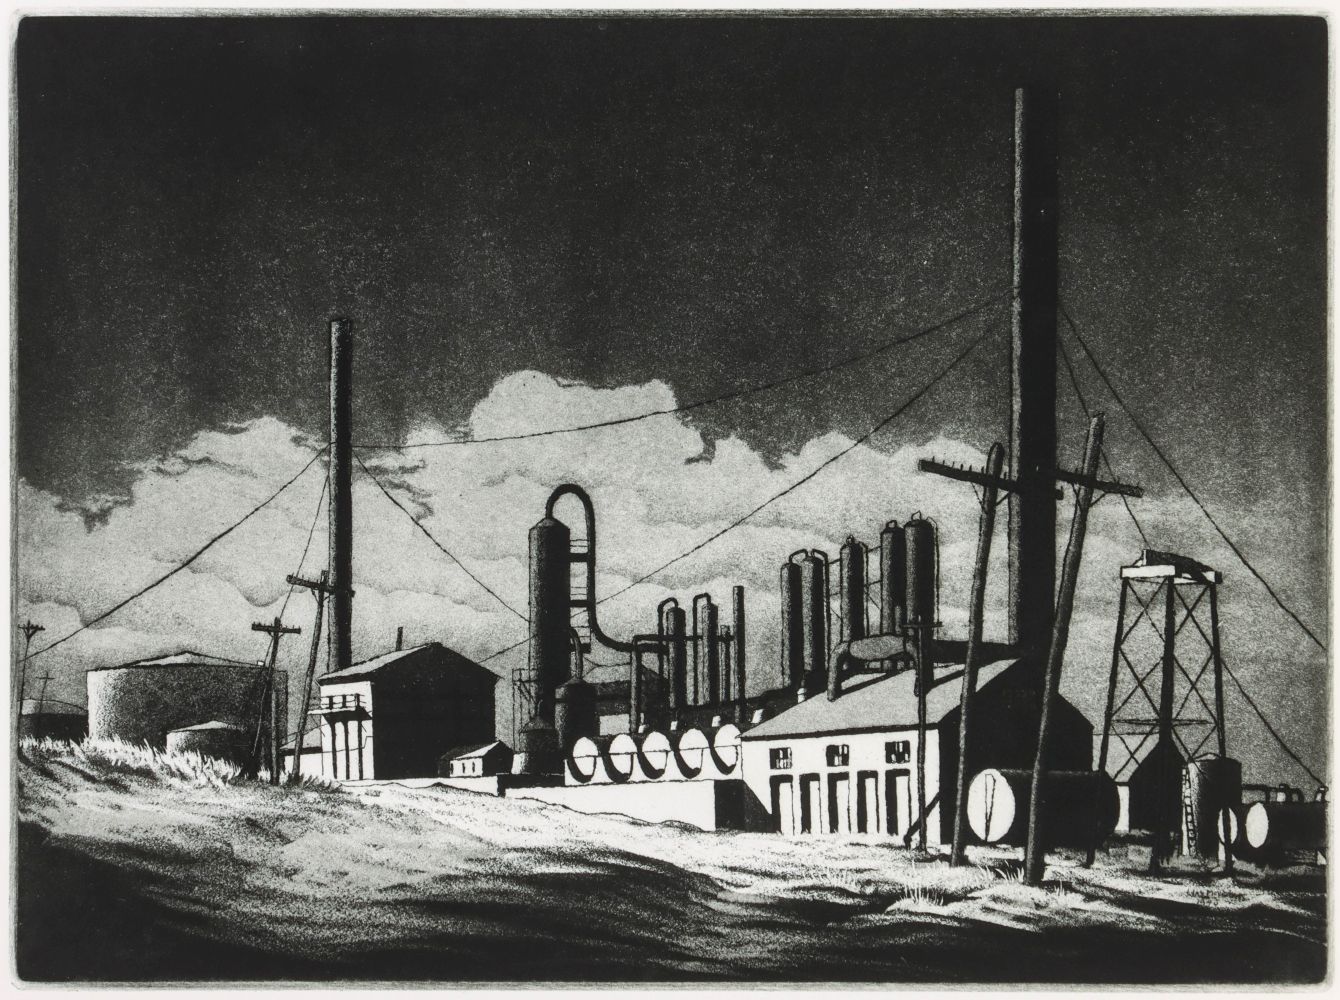 Abandoned (1940)